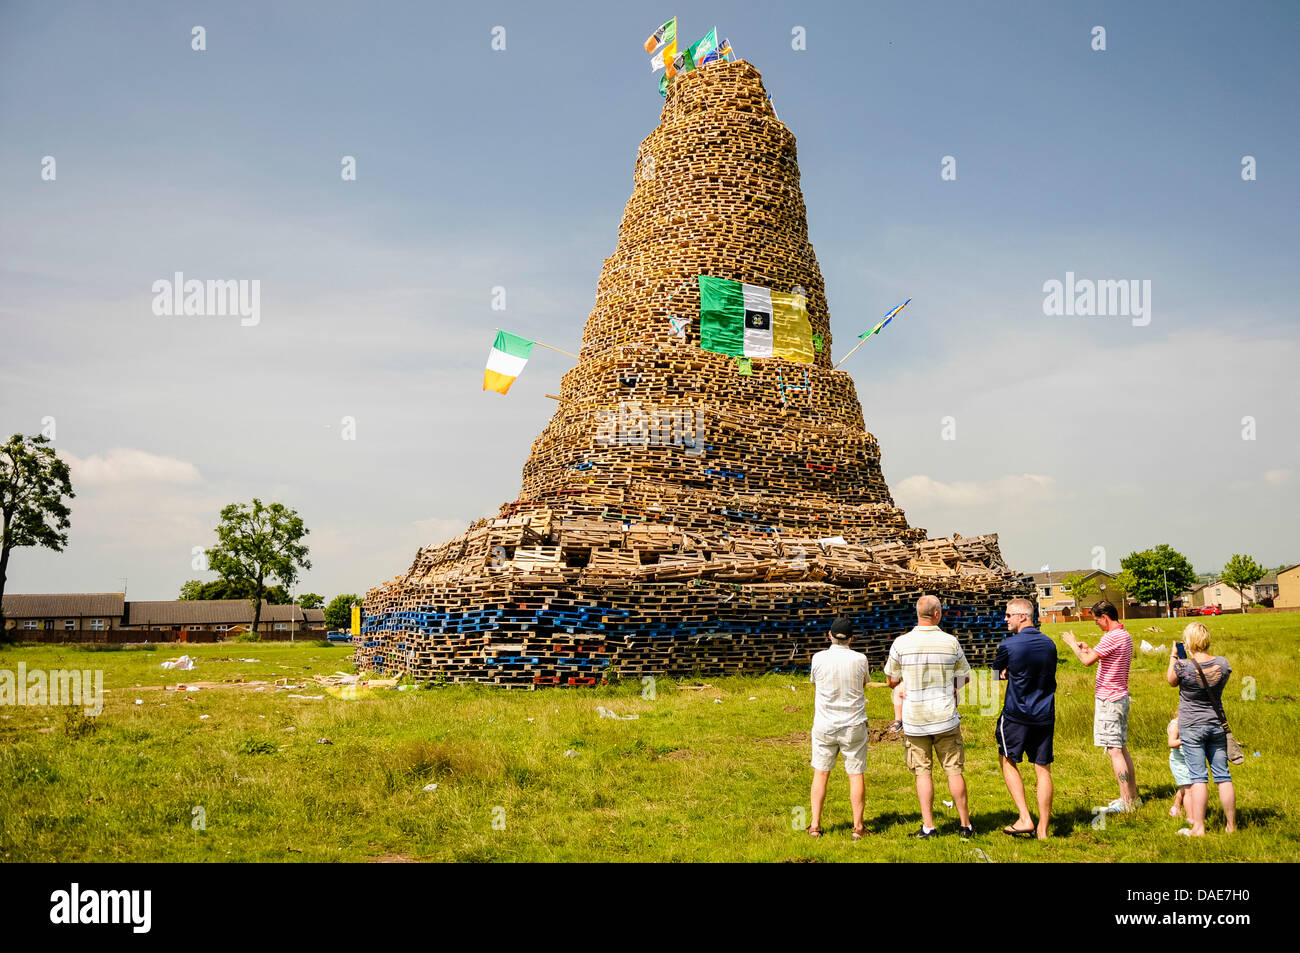 Belfast, Irlande du Nord. 11 juillet 2013. Les gens se rassemblent pour voir un énorme feu de joie, estimé à plus de 30m (100ft), dans Mossley. Crédit : Stephen Barnes/Alamy Live News Banque D'Images